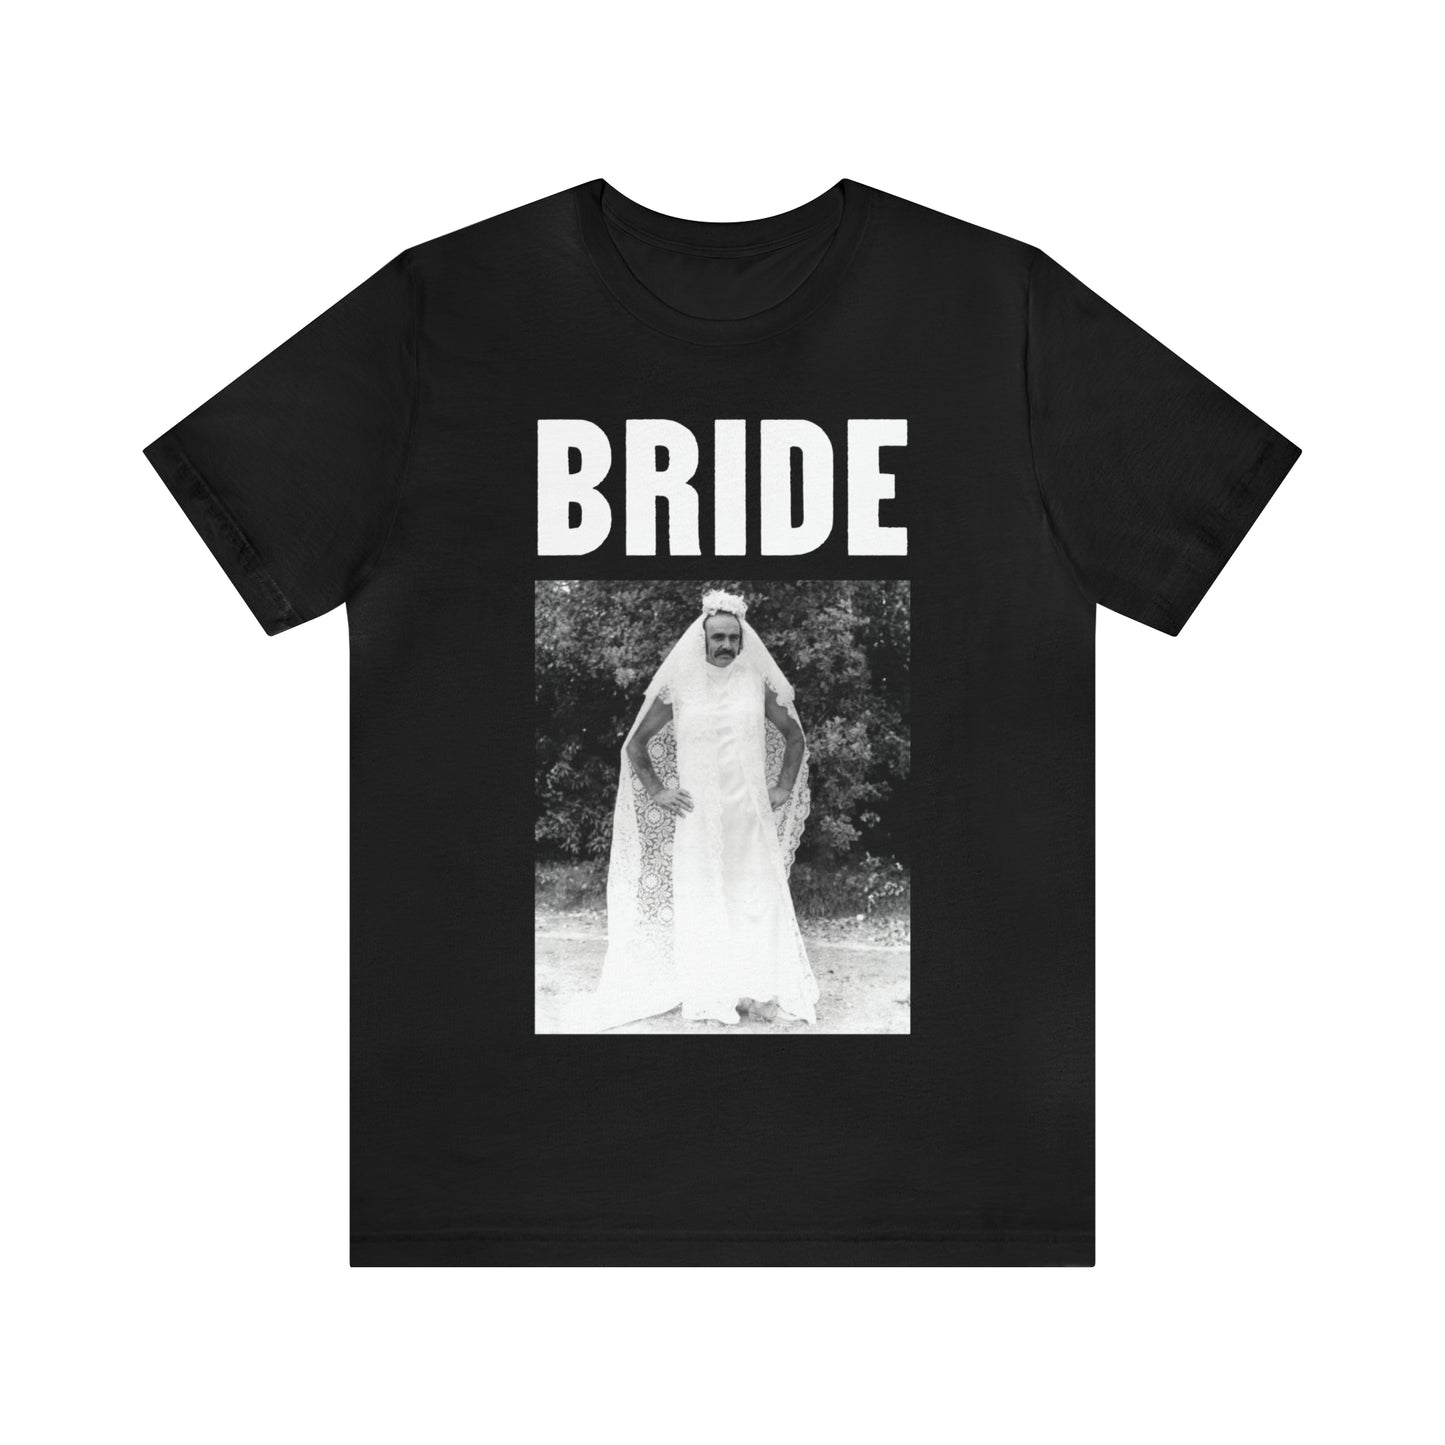 BRIDE - Zardoz - Sean Connery in a wedding dress